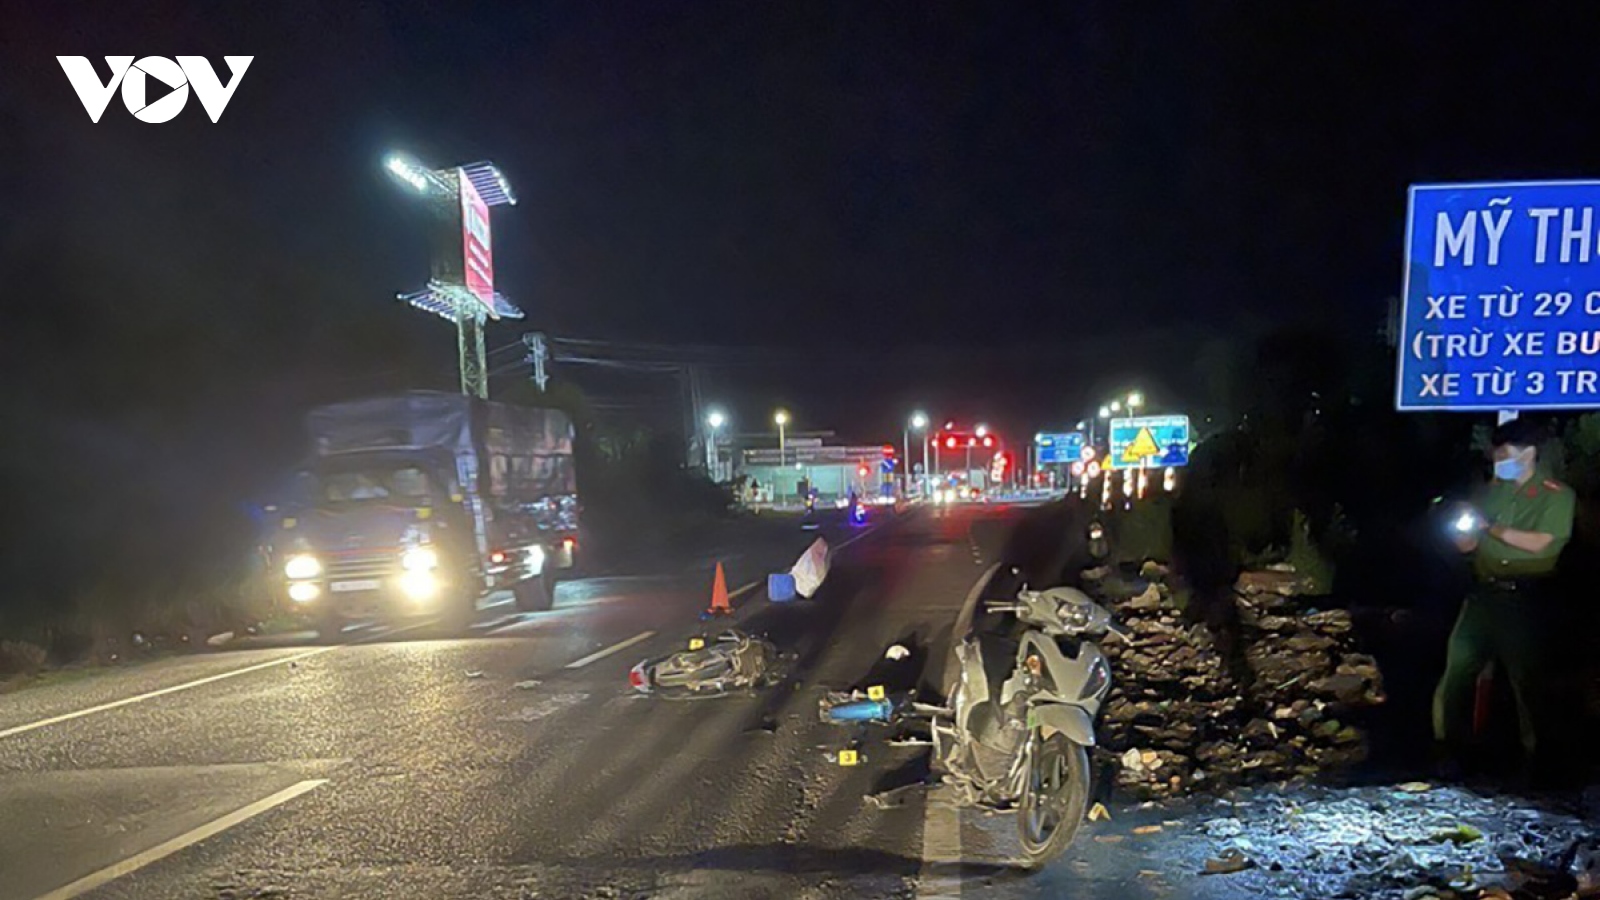 Làm rõ một vụ tai nạn giao thông làm nhiều người thương vong ở Tiền Giang